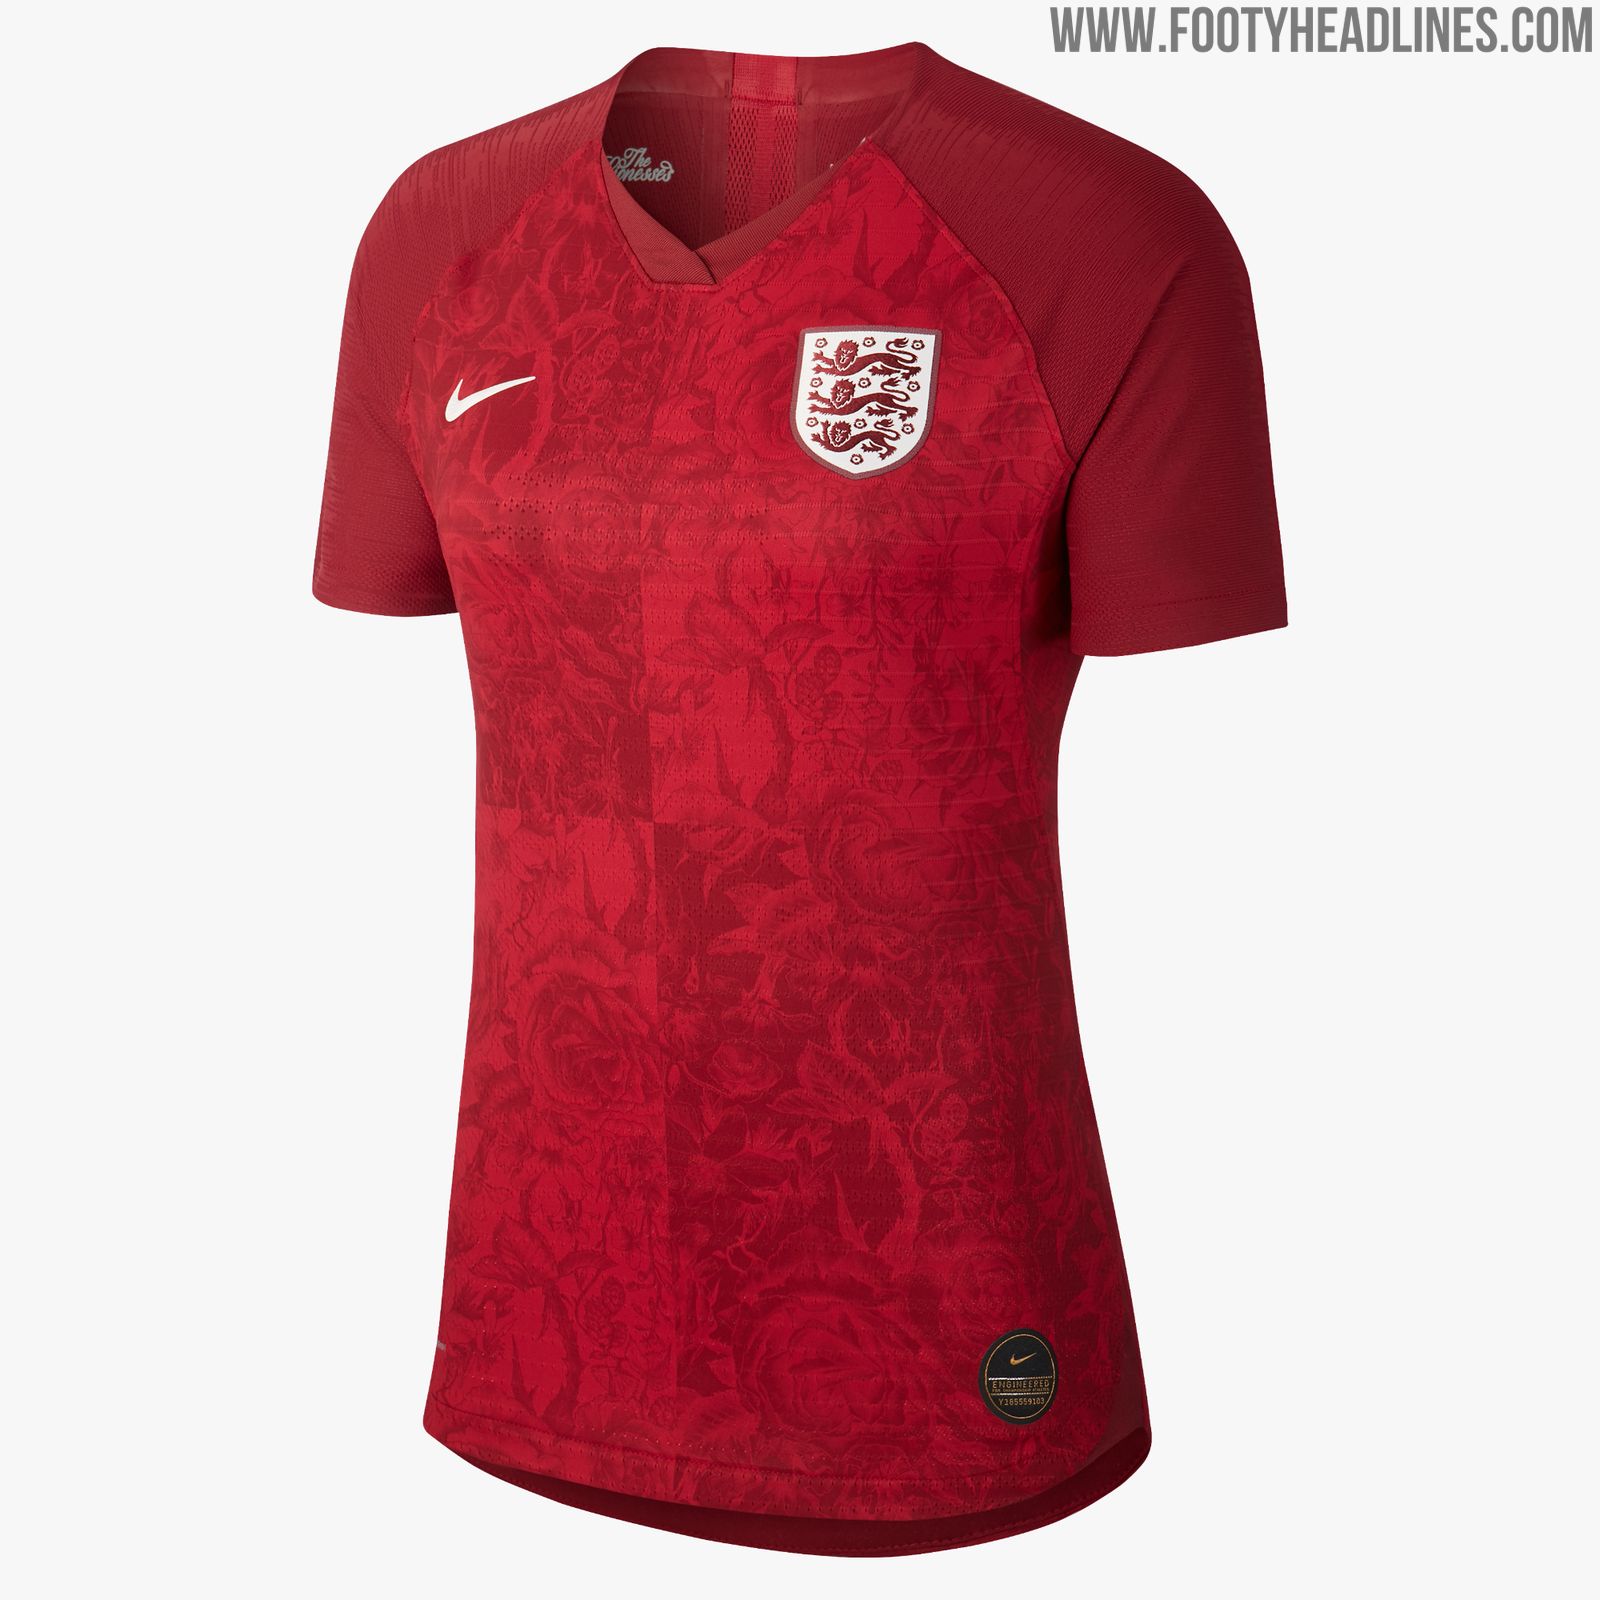 Umwerfendes Nike England FrauenfußballWM 2019 Auswärtstrikot enthüllt